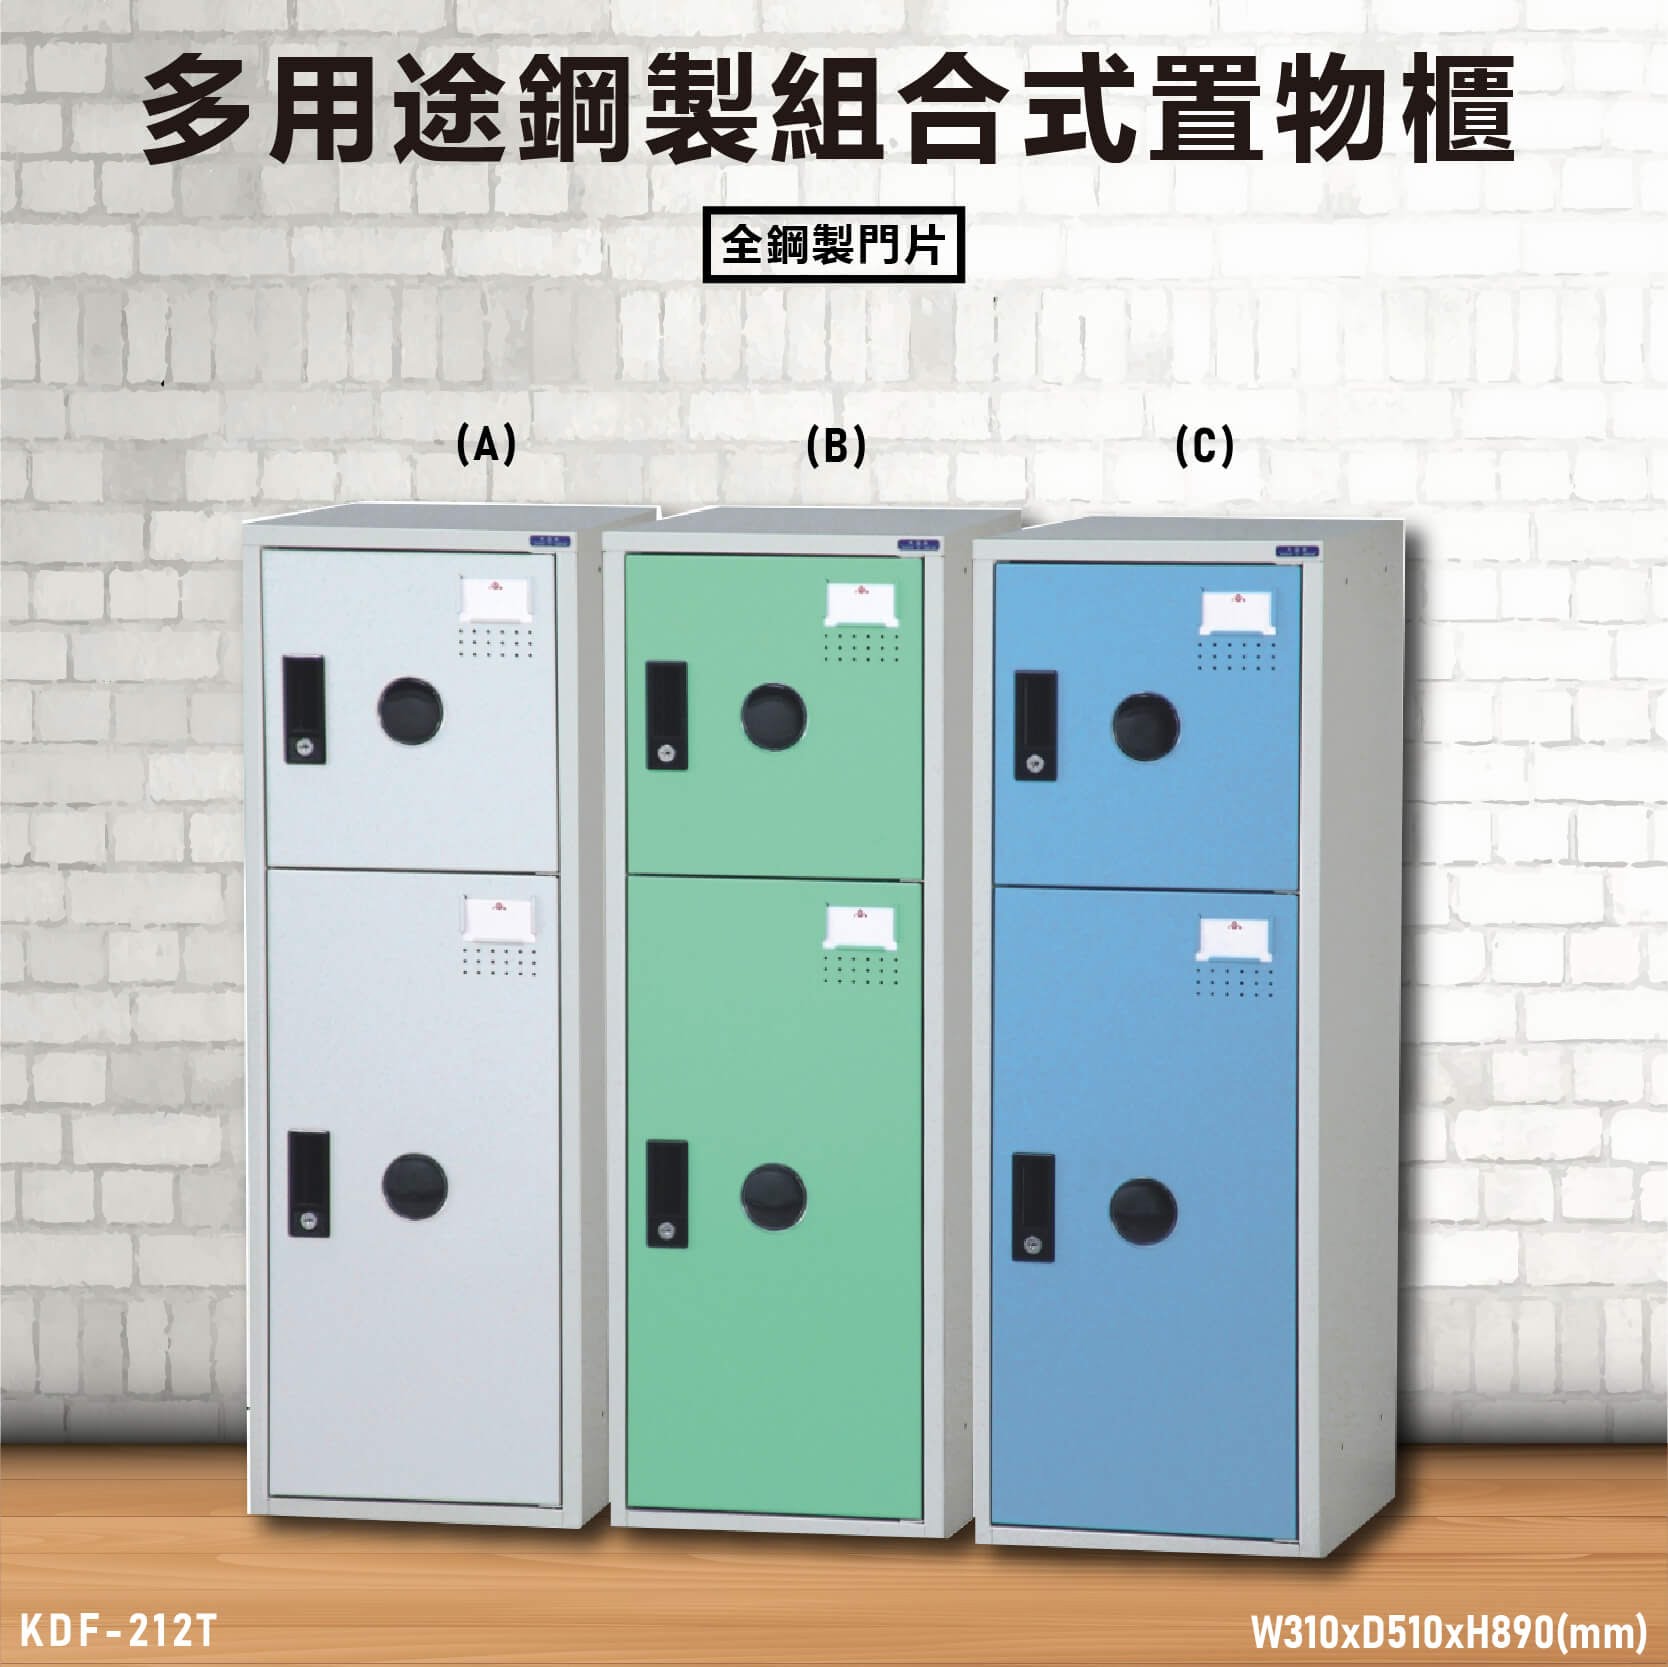 『TW品質保證』KDF-212T【大富】多用途鋼製組合式置物櫃 衣櫃 鞋櫃 置物櫃 零件存放分類 任意組合櫃子